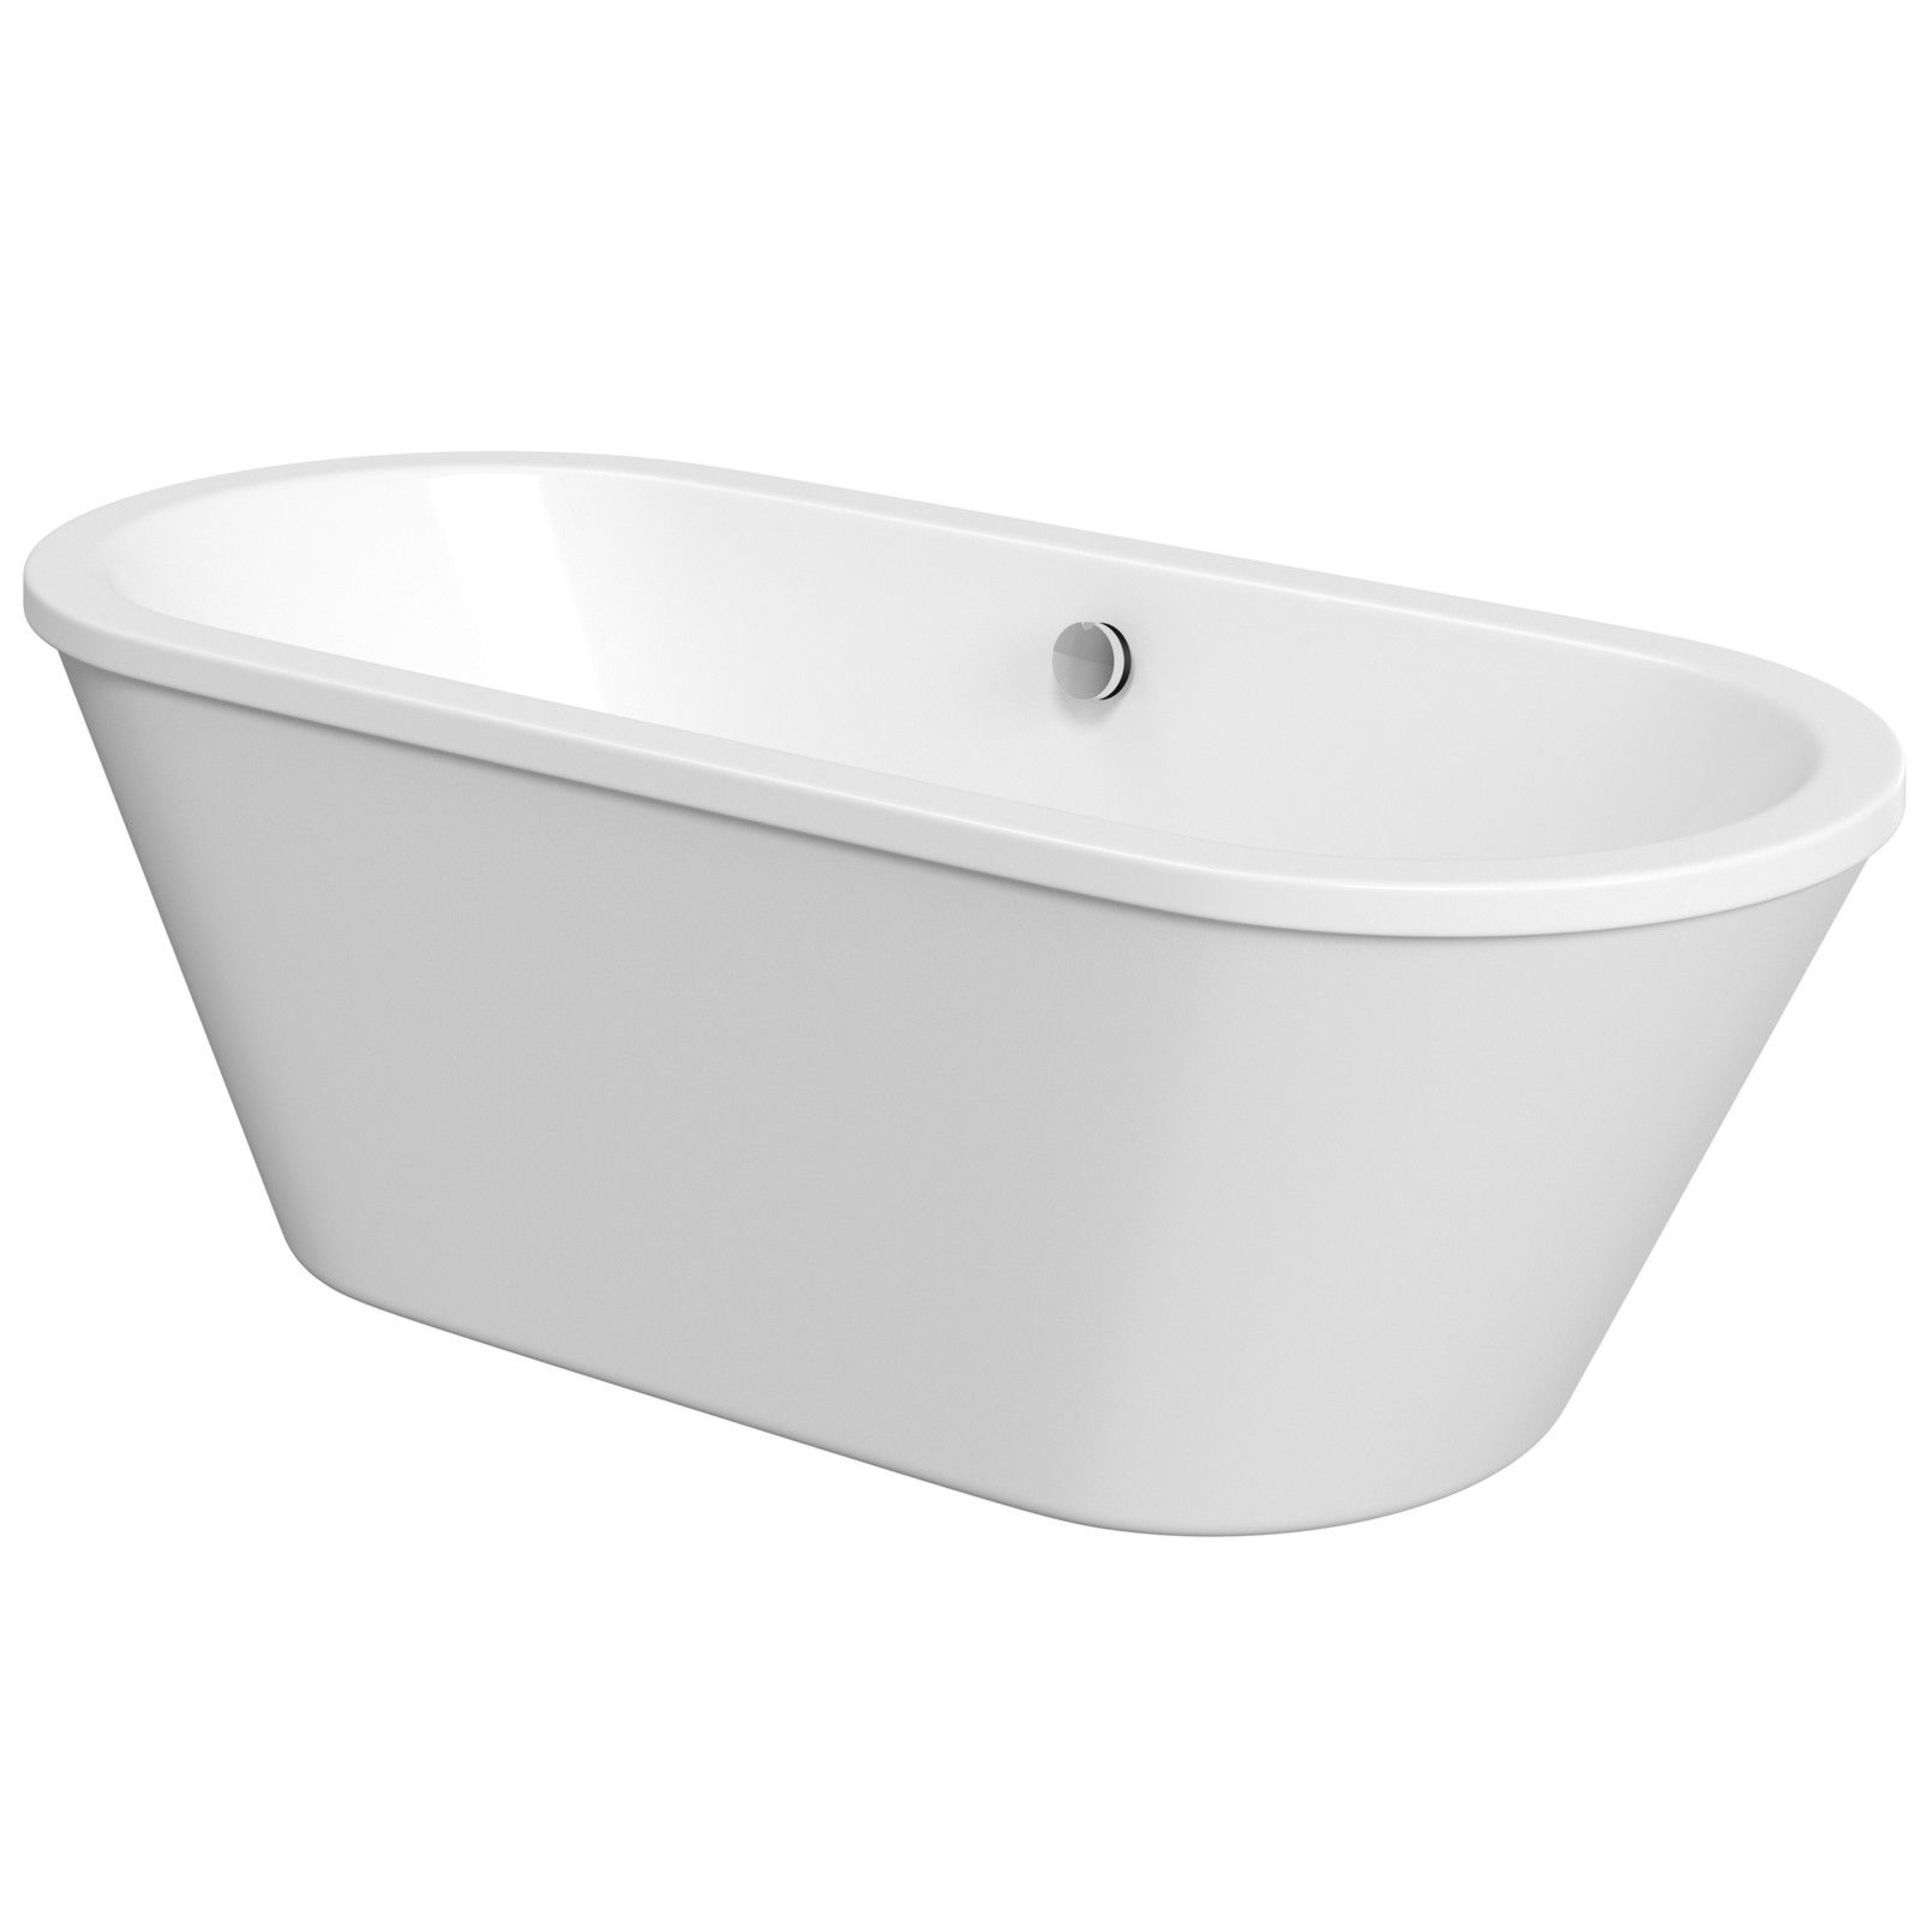 New (S169) Porcelanosa 1700x750mm Skirted Freestanding Bath. Freestanding Skirted Bath Is A Co... - Image 2 of 2